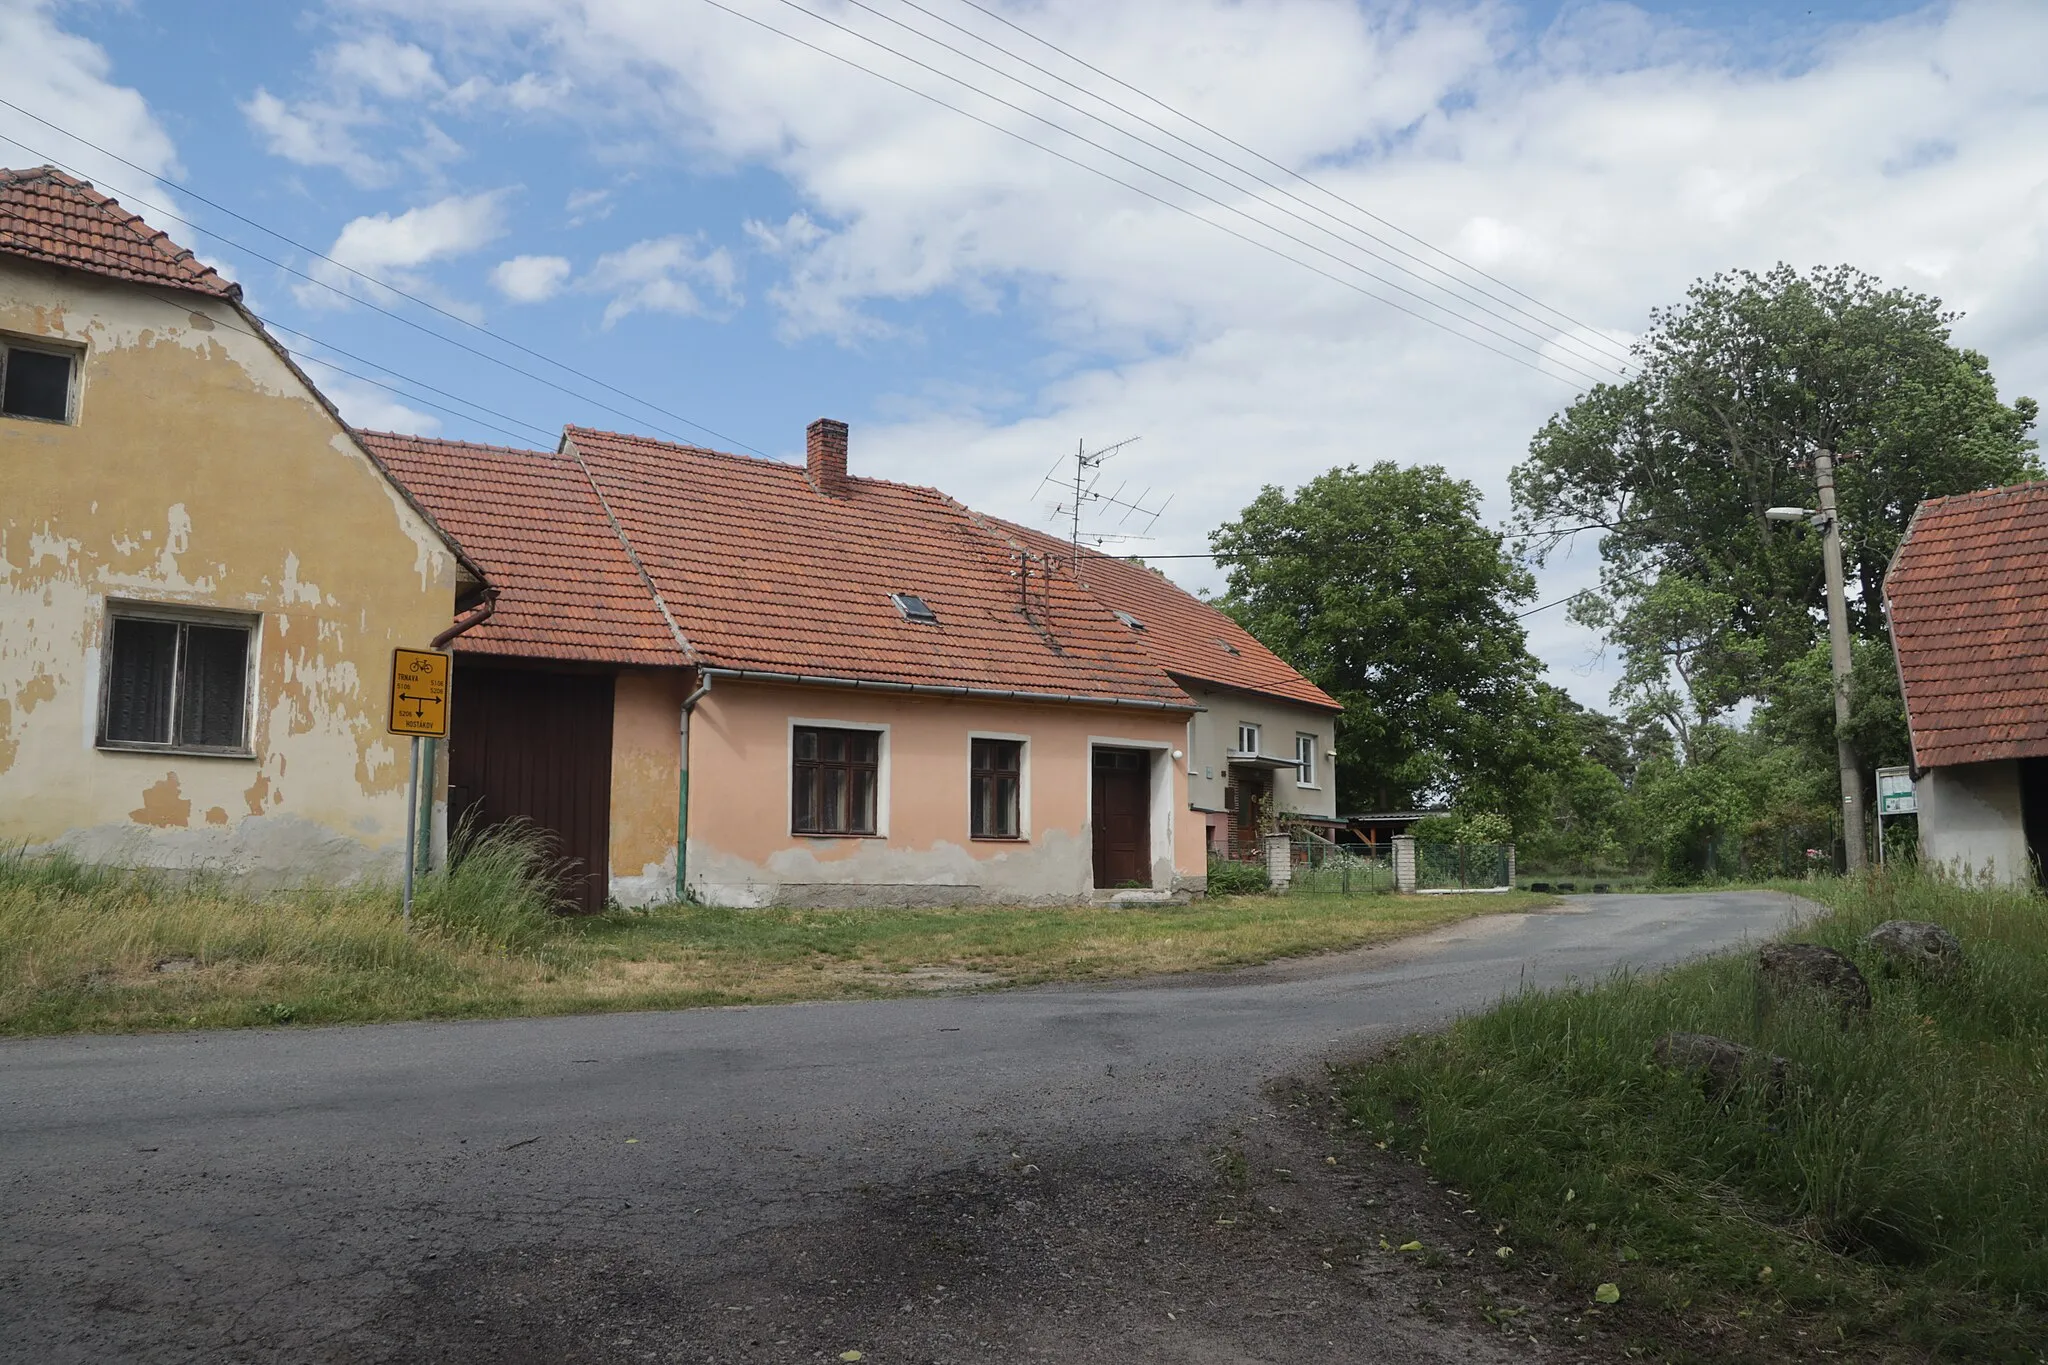 Photo showing: Overview of houses in Doubrava, Valdíkov, Třebíč District.